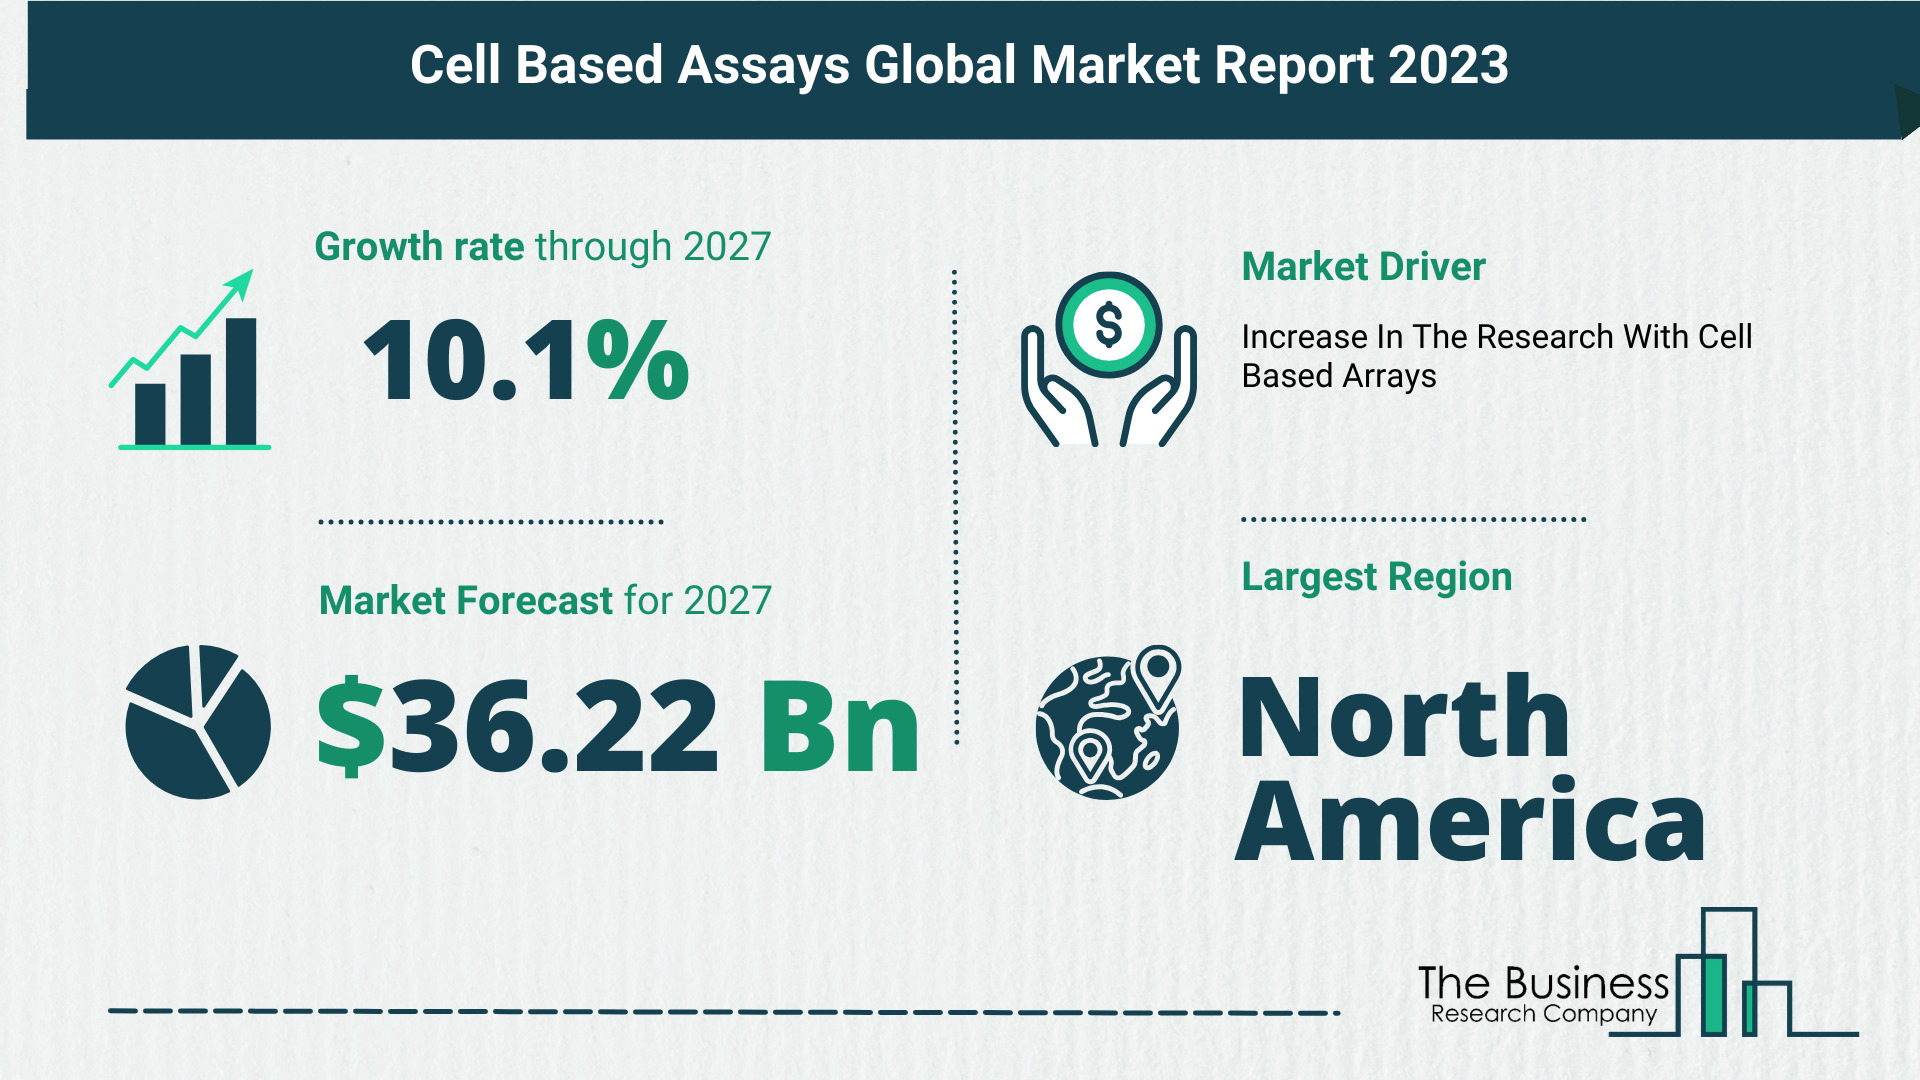 Global Cell Based Assays Market